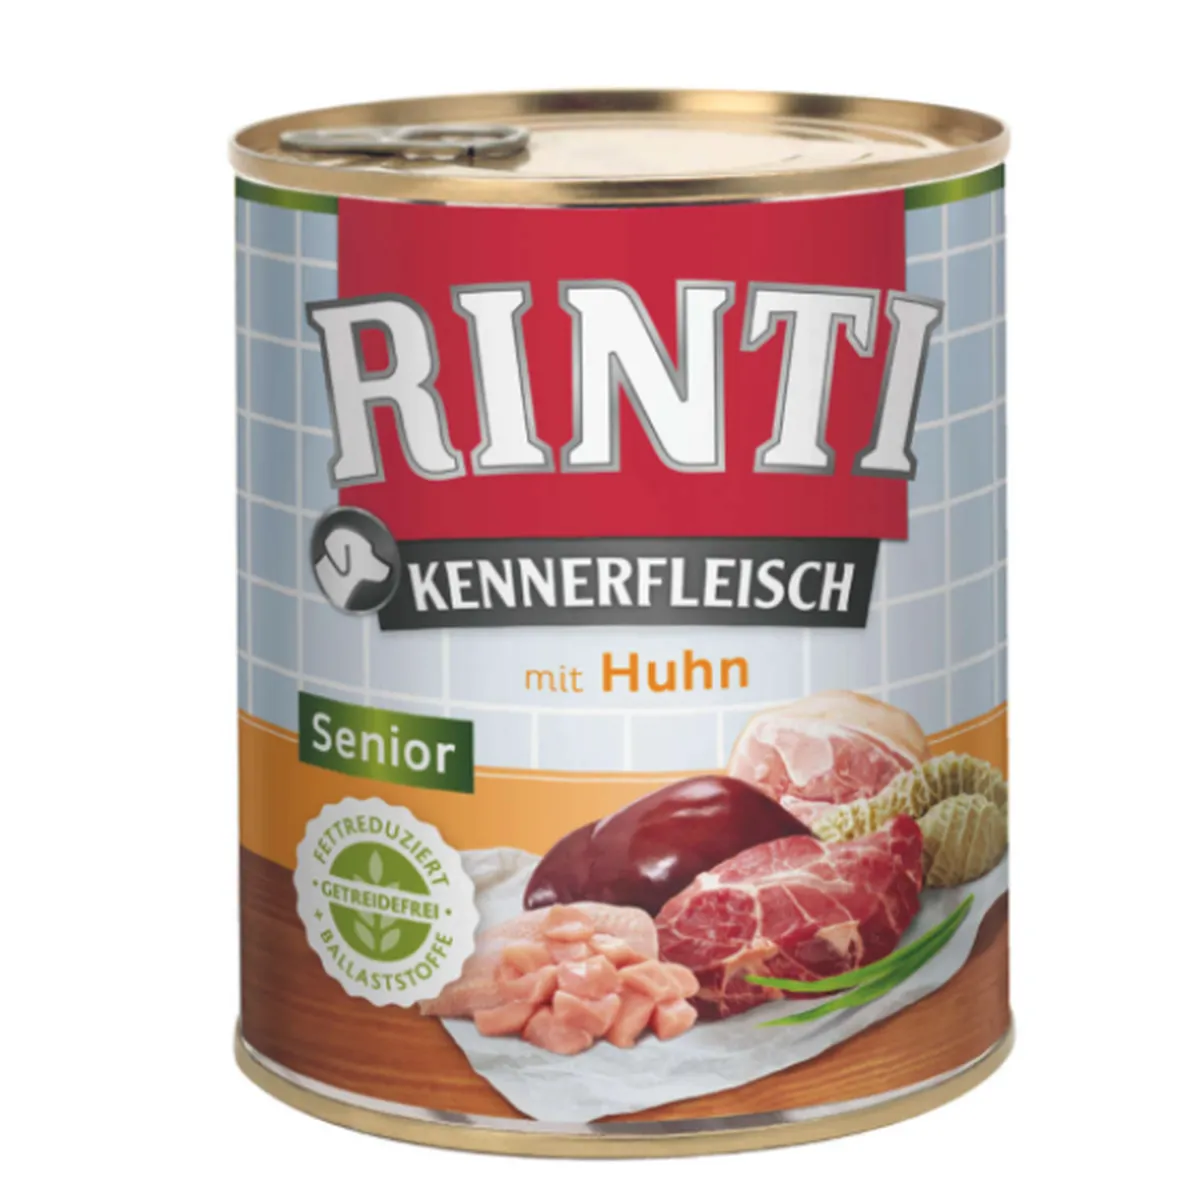 Rinti Kennerfleisch Senior Huhn 800g